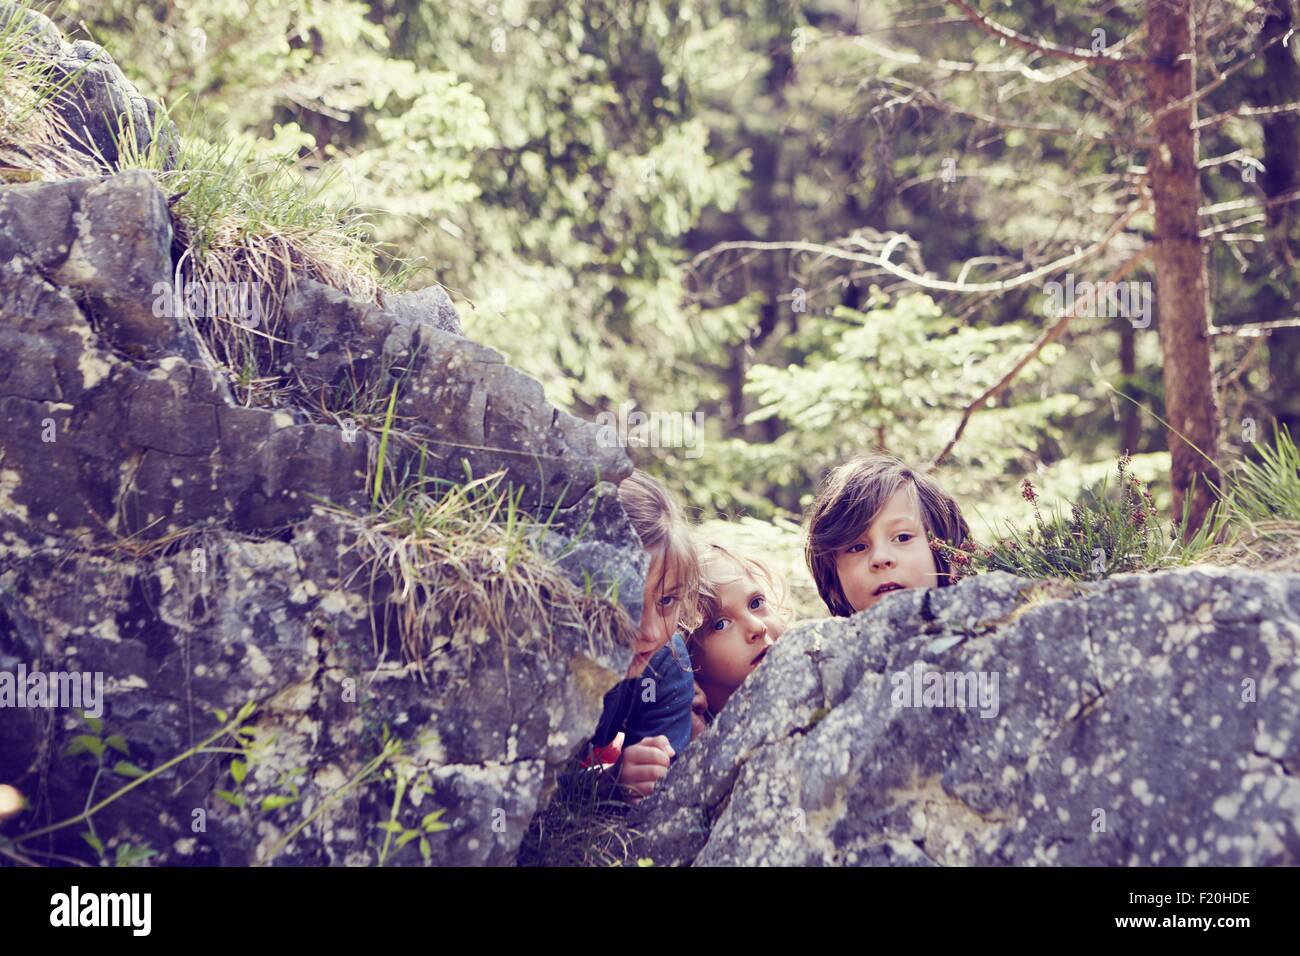 Three children hiding behind rocks in forest Stock Photo